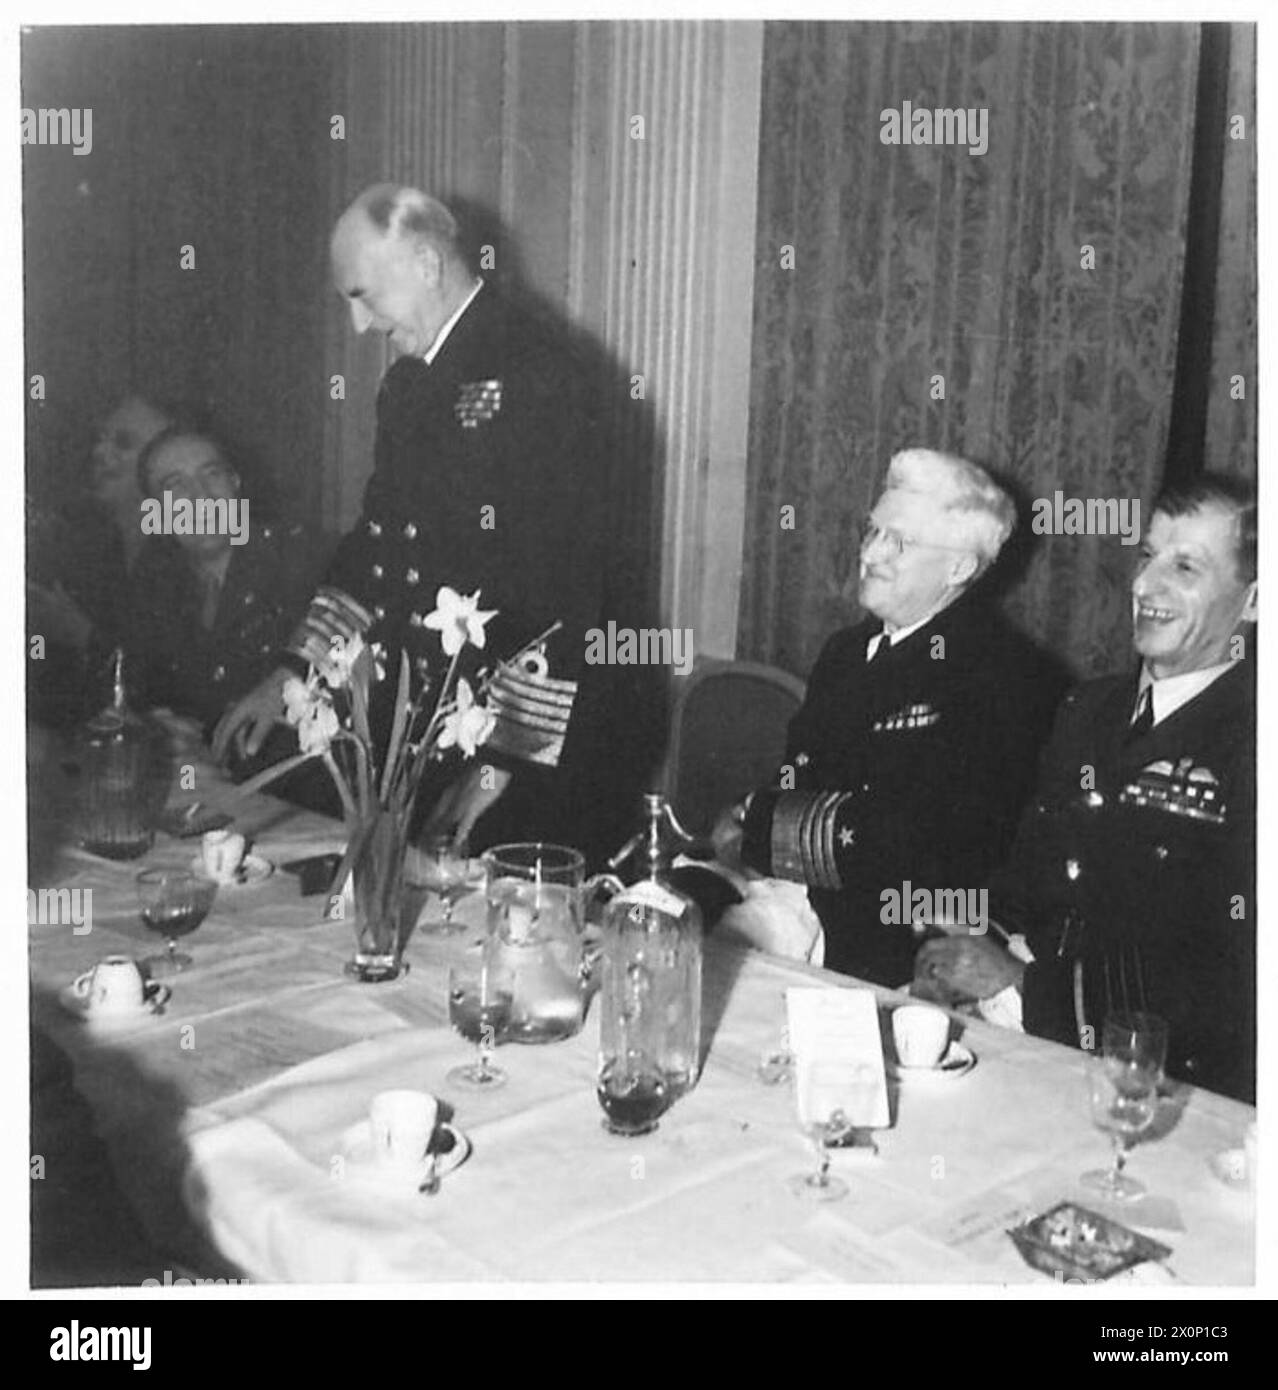 BRITISH-AMERICAN FORCES DINING CLUB - amiral de la flotte Sir Dudley Pound (premier Lord de mer et chef d'état-major de la marine) parlant. Négatif photographique, Armée britannique Banque D'Images